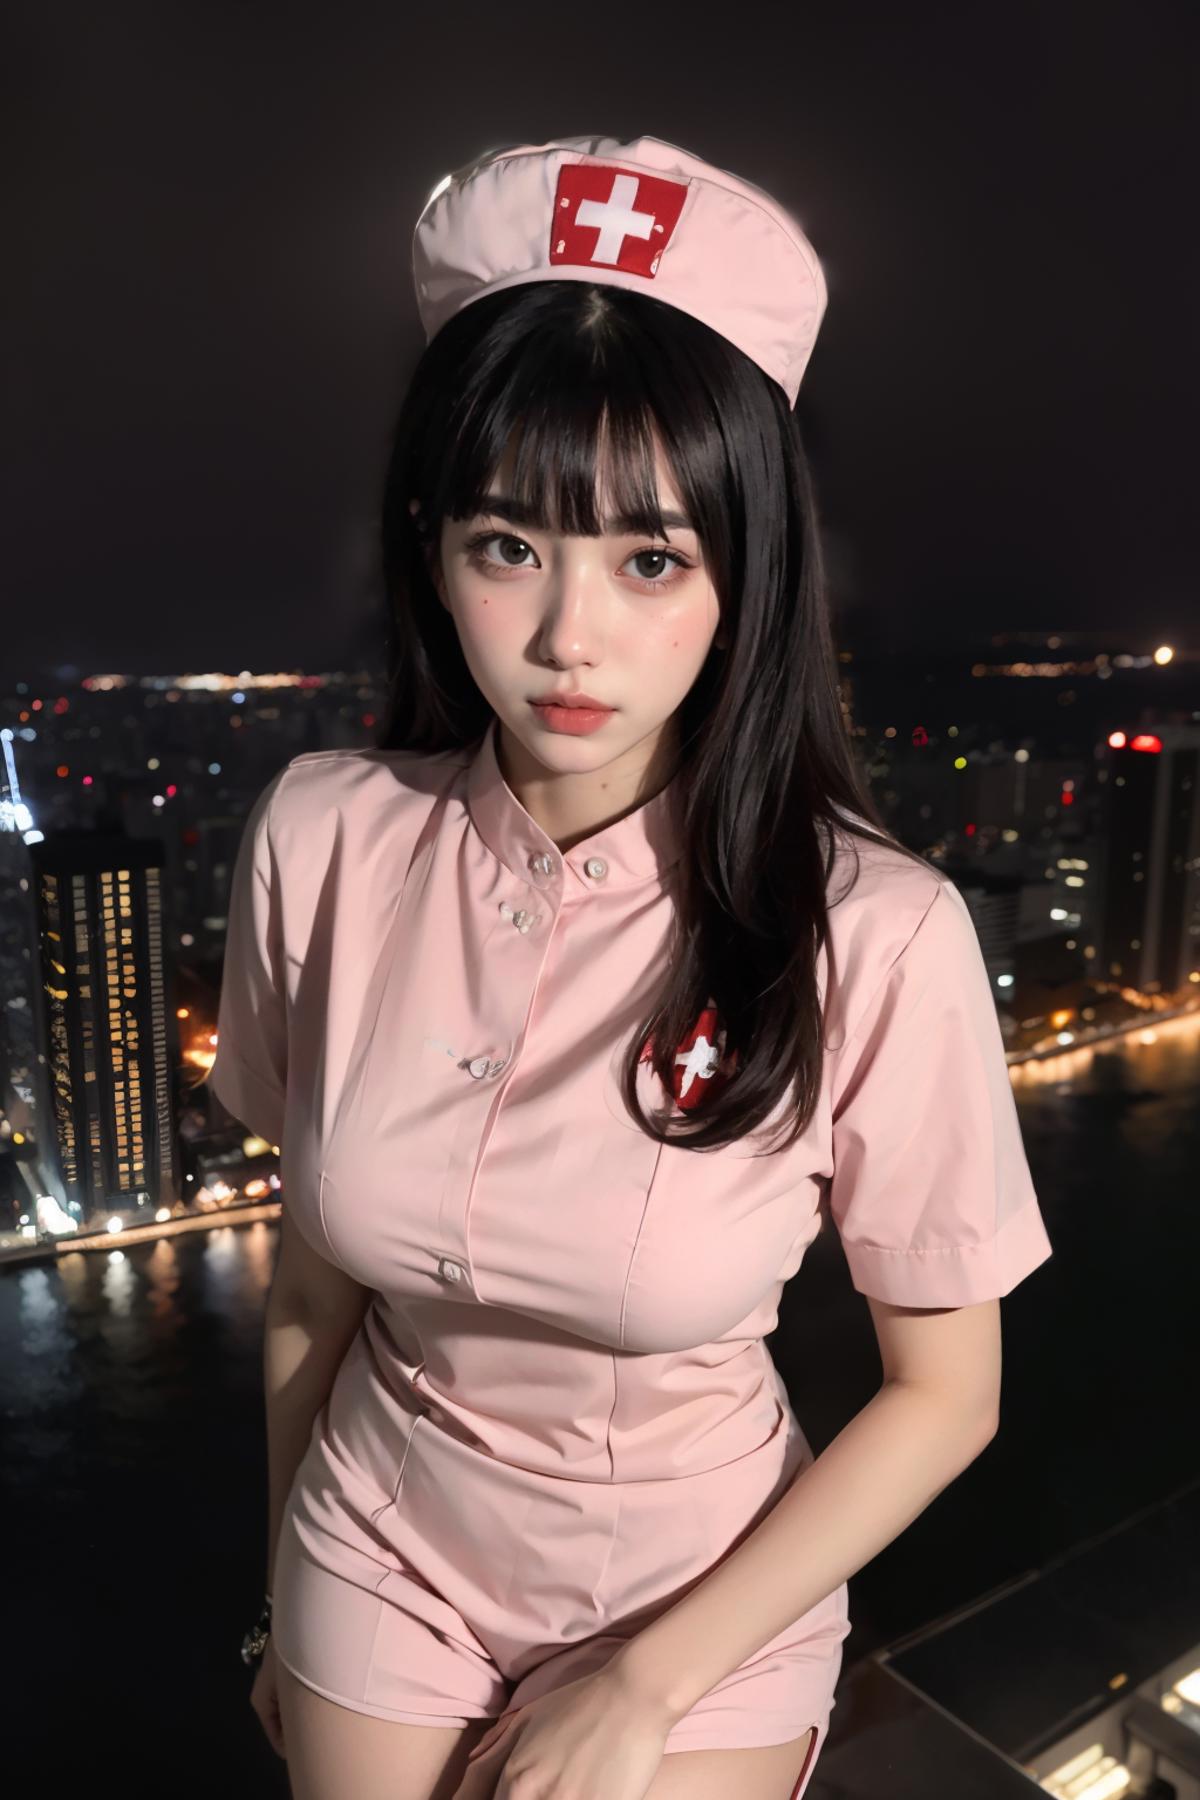 明月的服装  粉色性感护士服| Pink sexy nurse gown image by CMMY